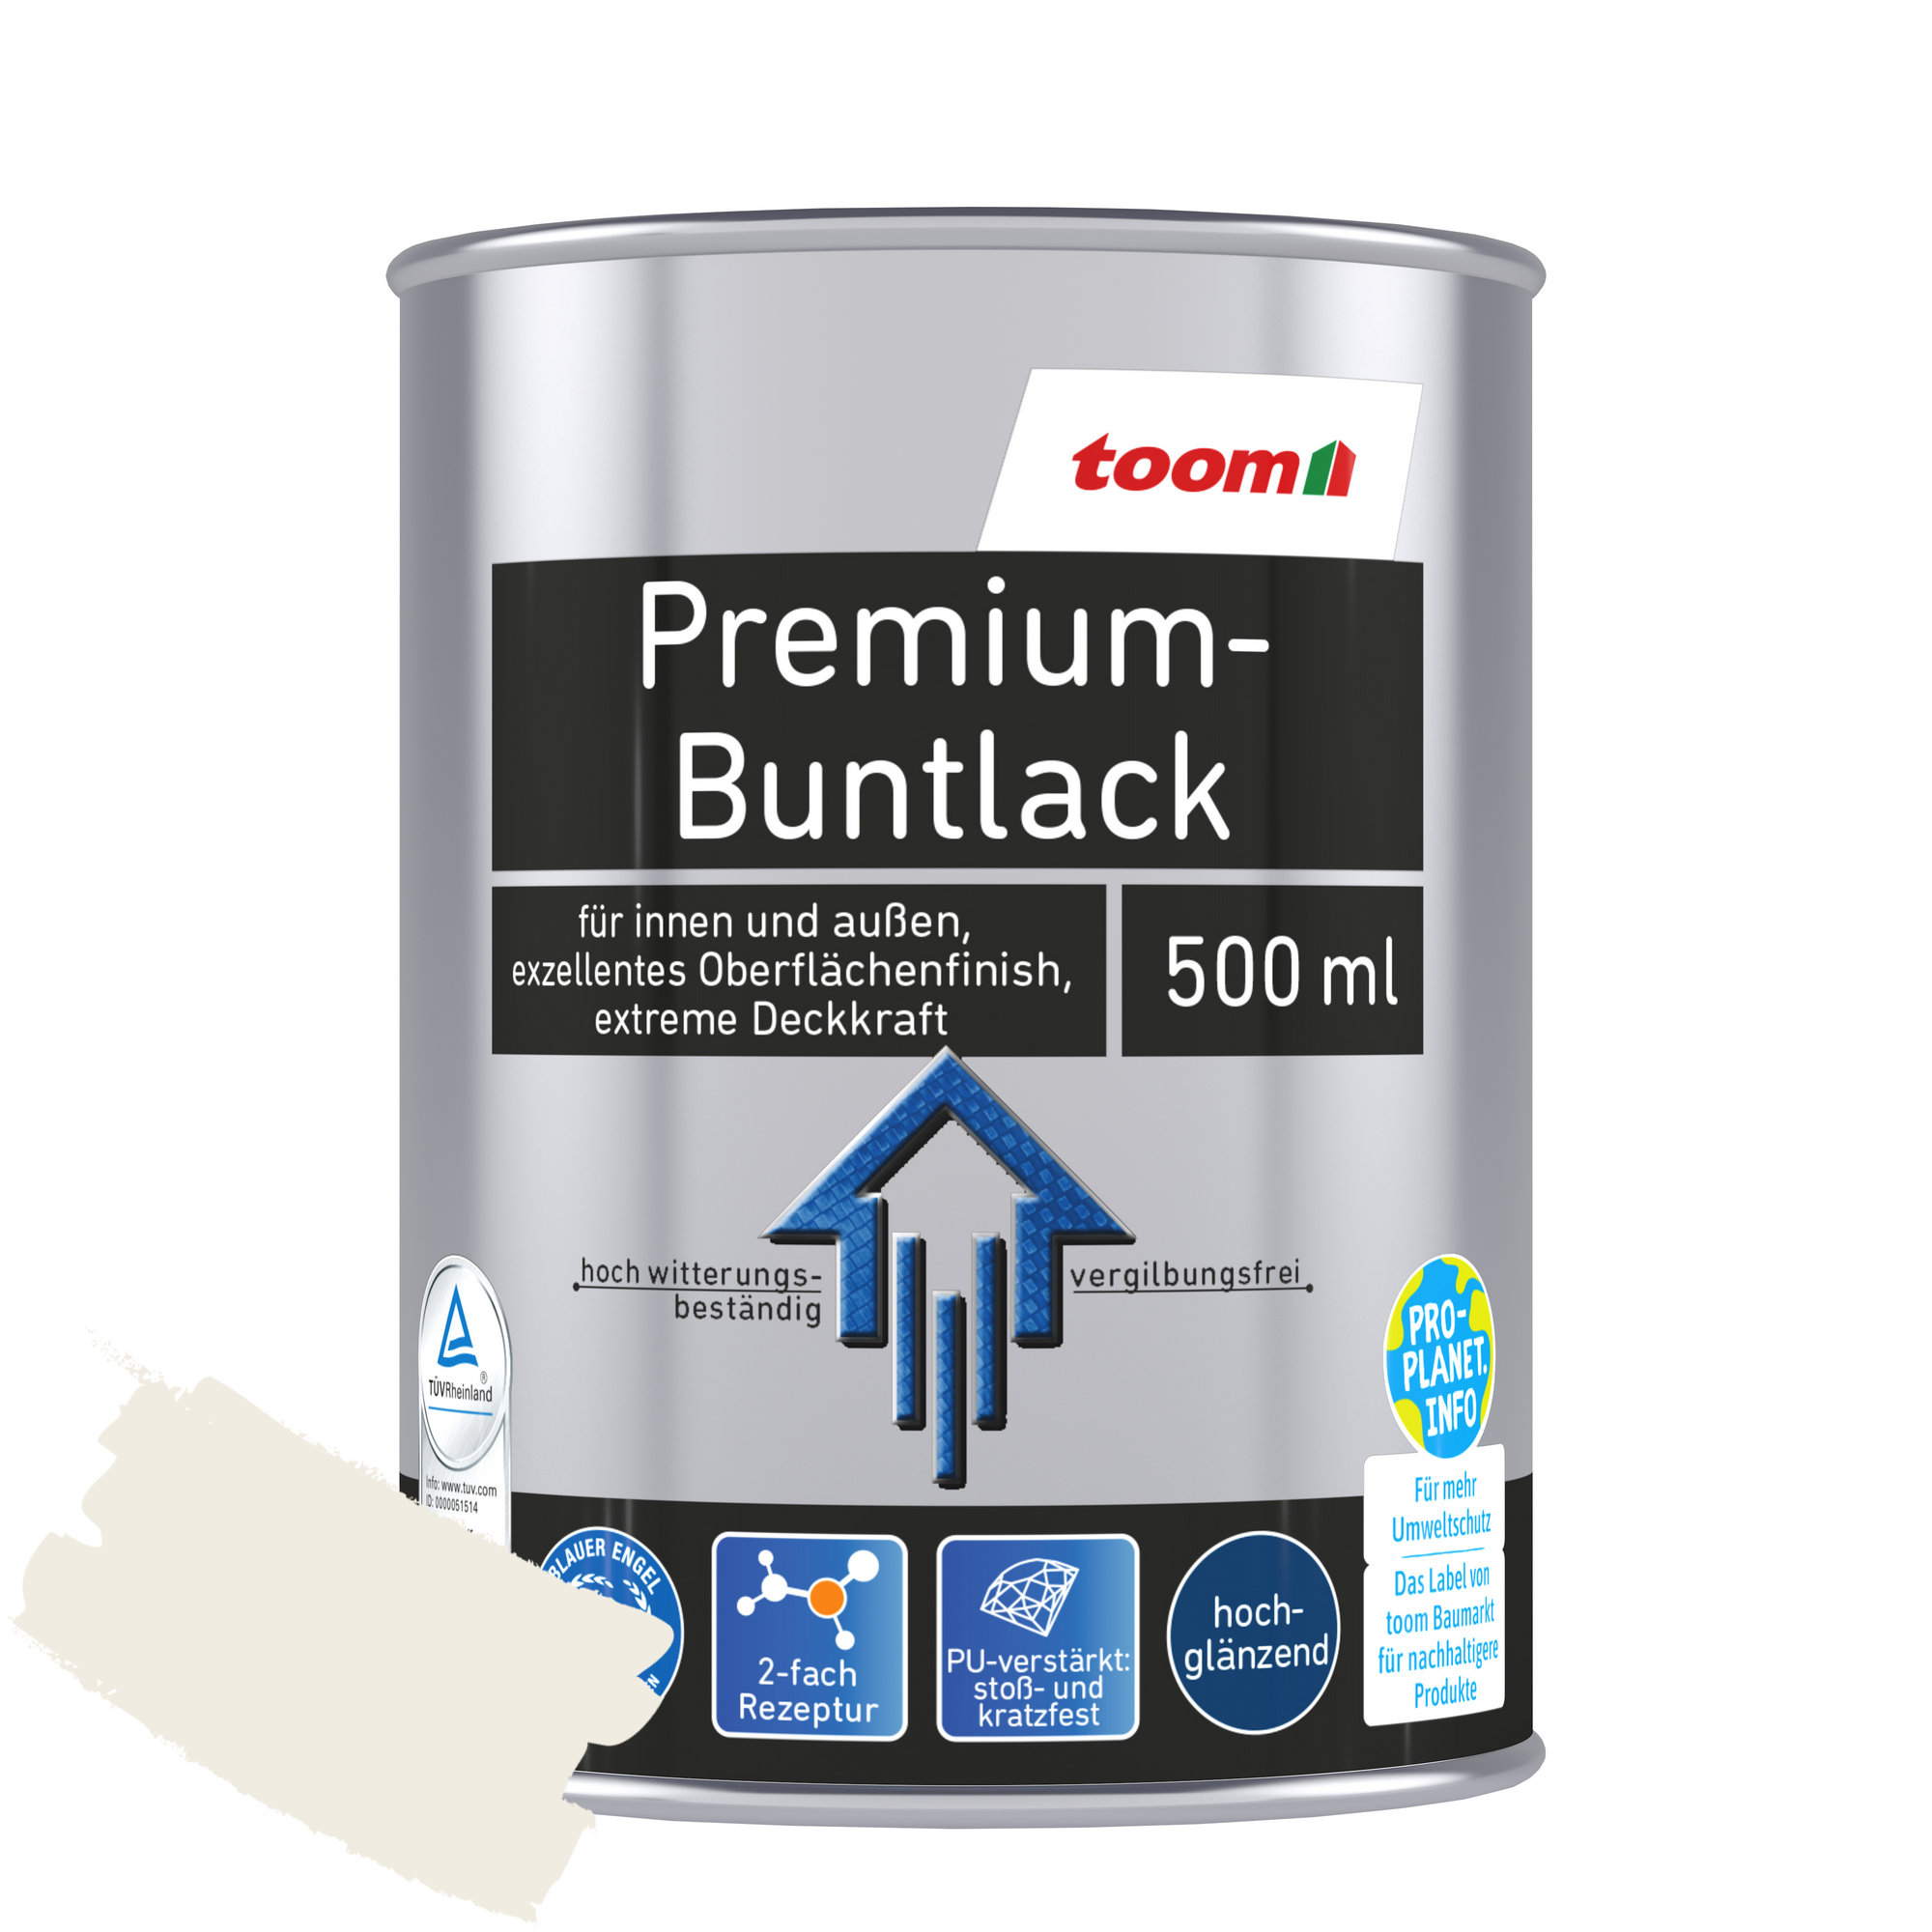 Premium-Buntlack reinweiß glänzend 500 ml + product picture